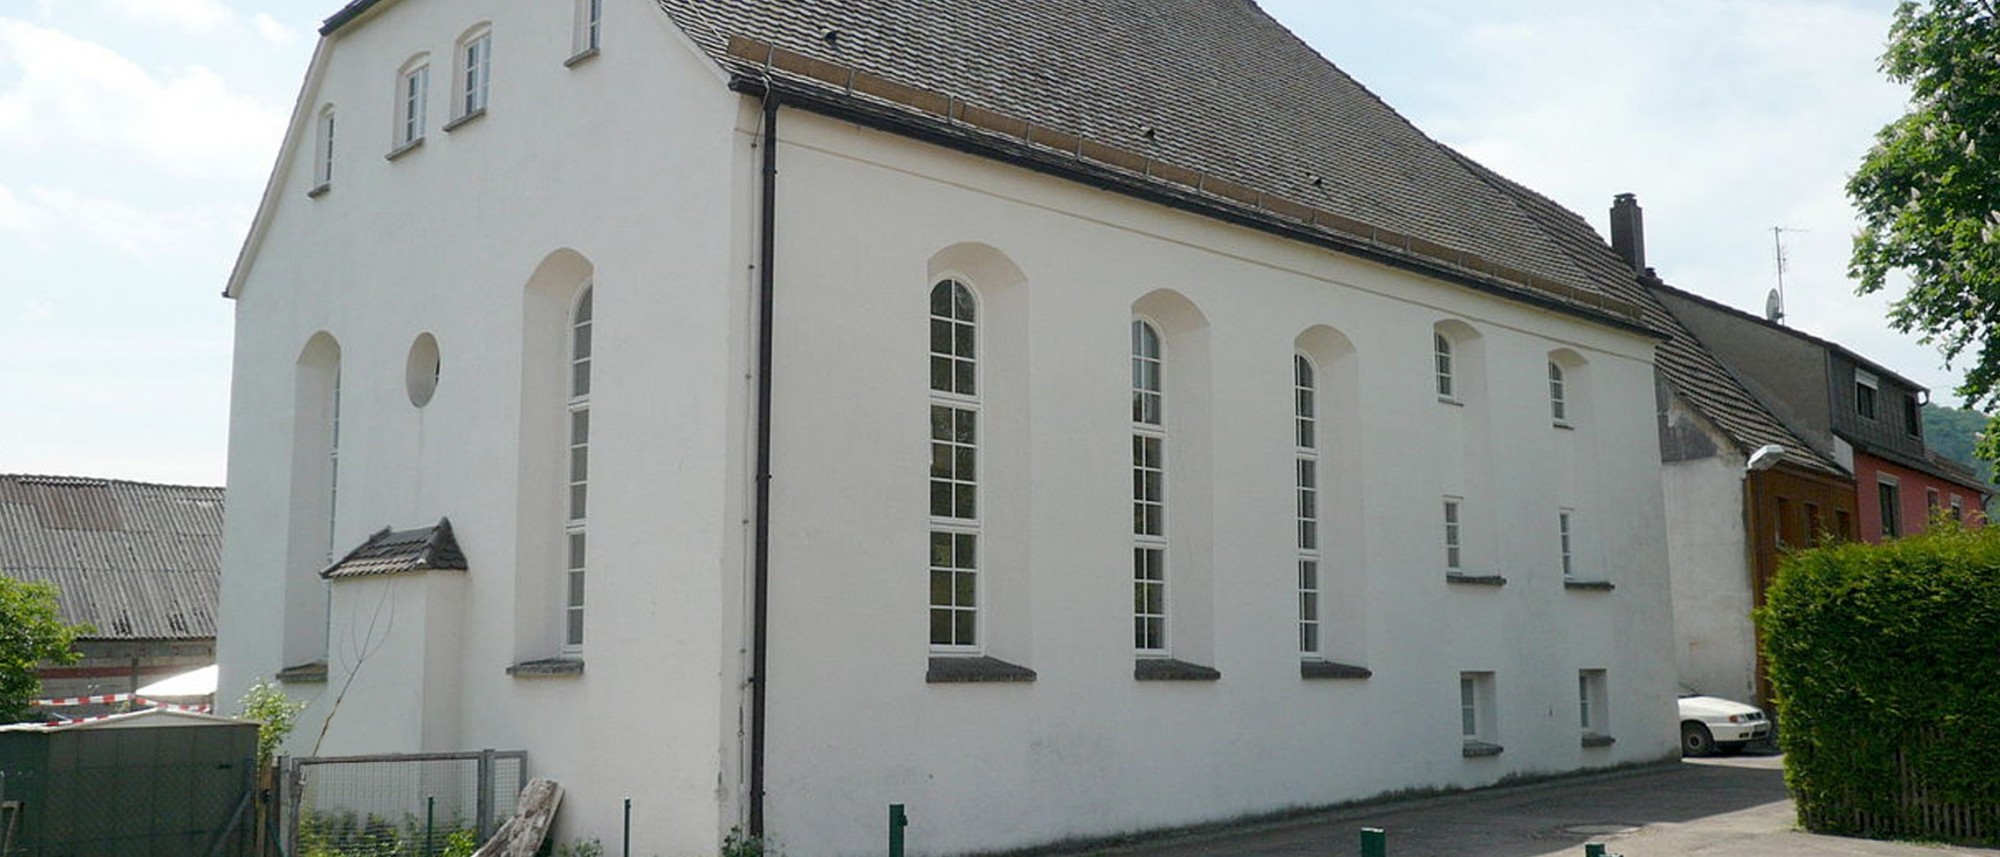 Außenansicht der ehemaligen Synagoge Bopfingen-Oberdorf. Führt zur Unterseite &quot;Bopfingen-Oberdorf&quot;.